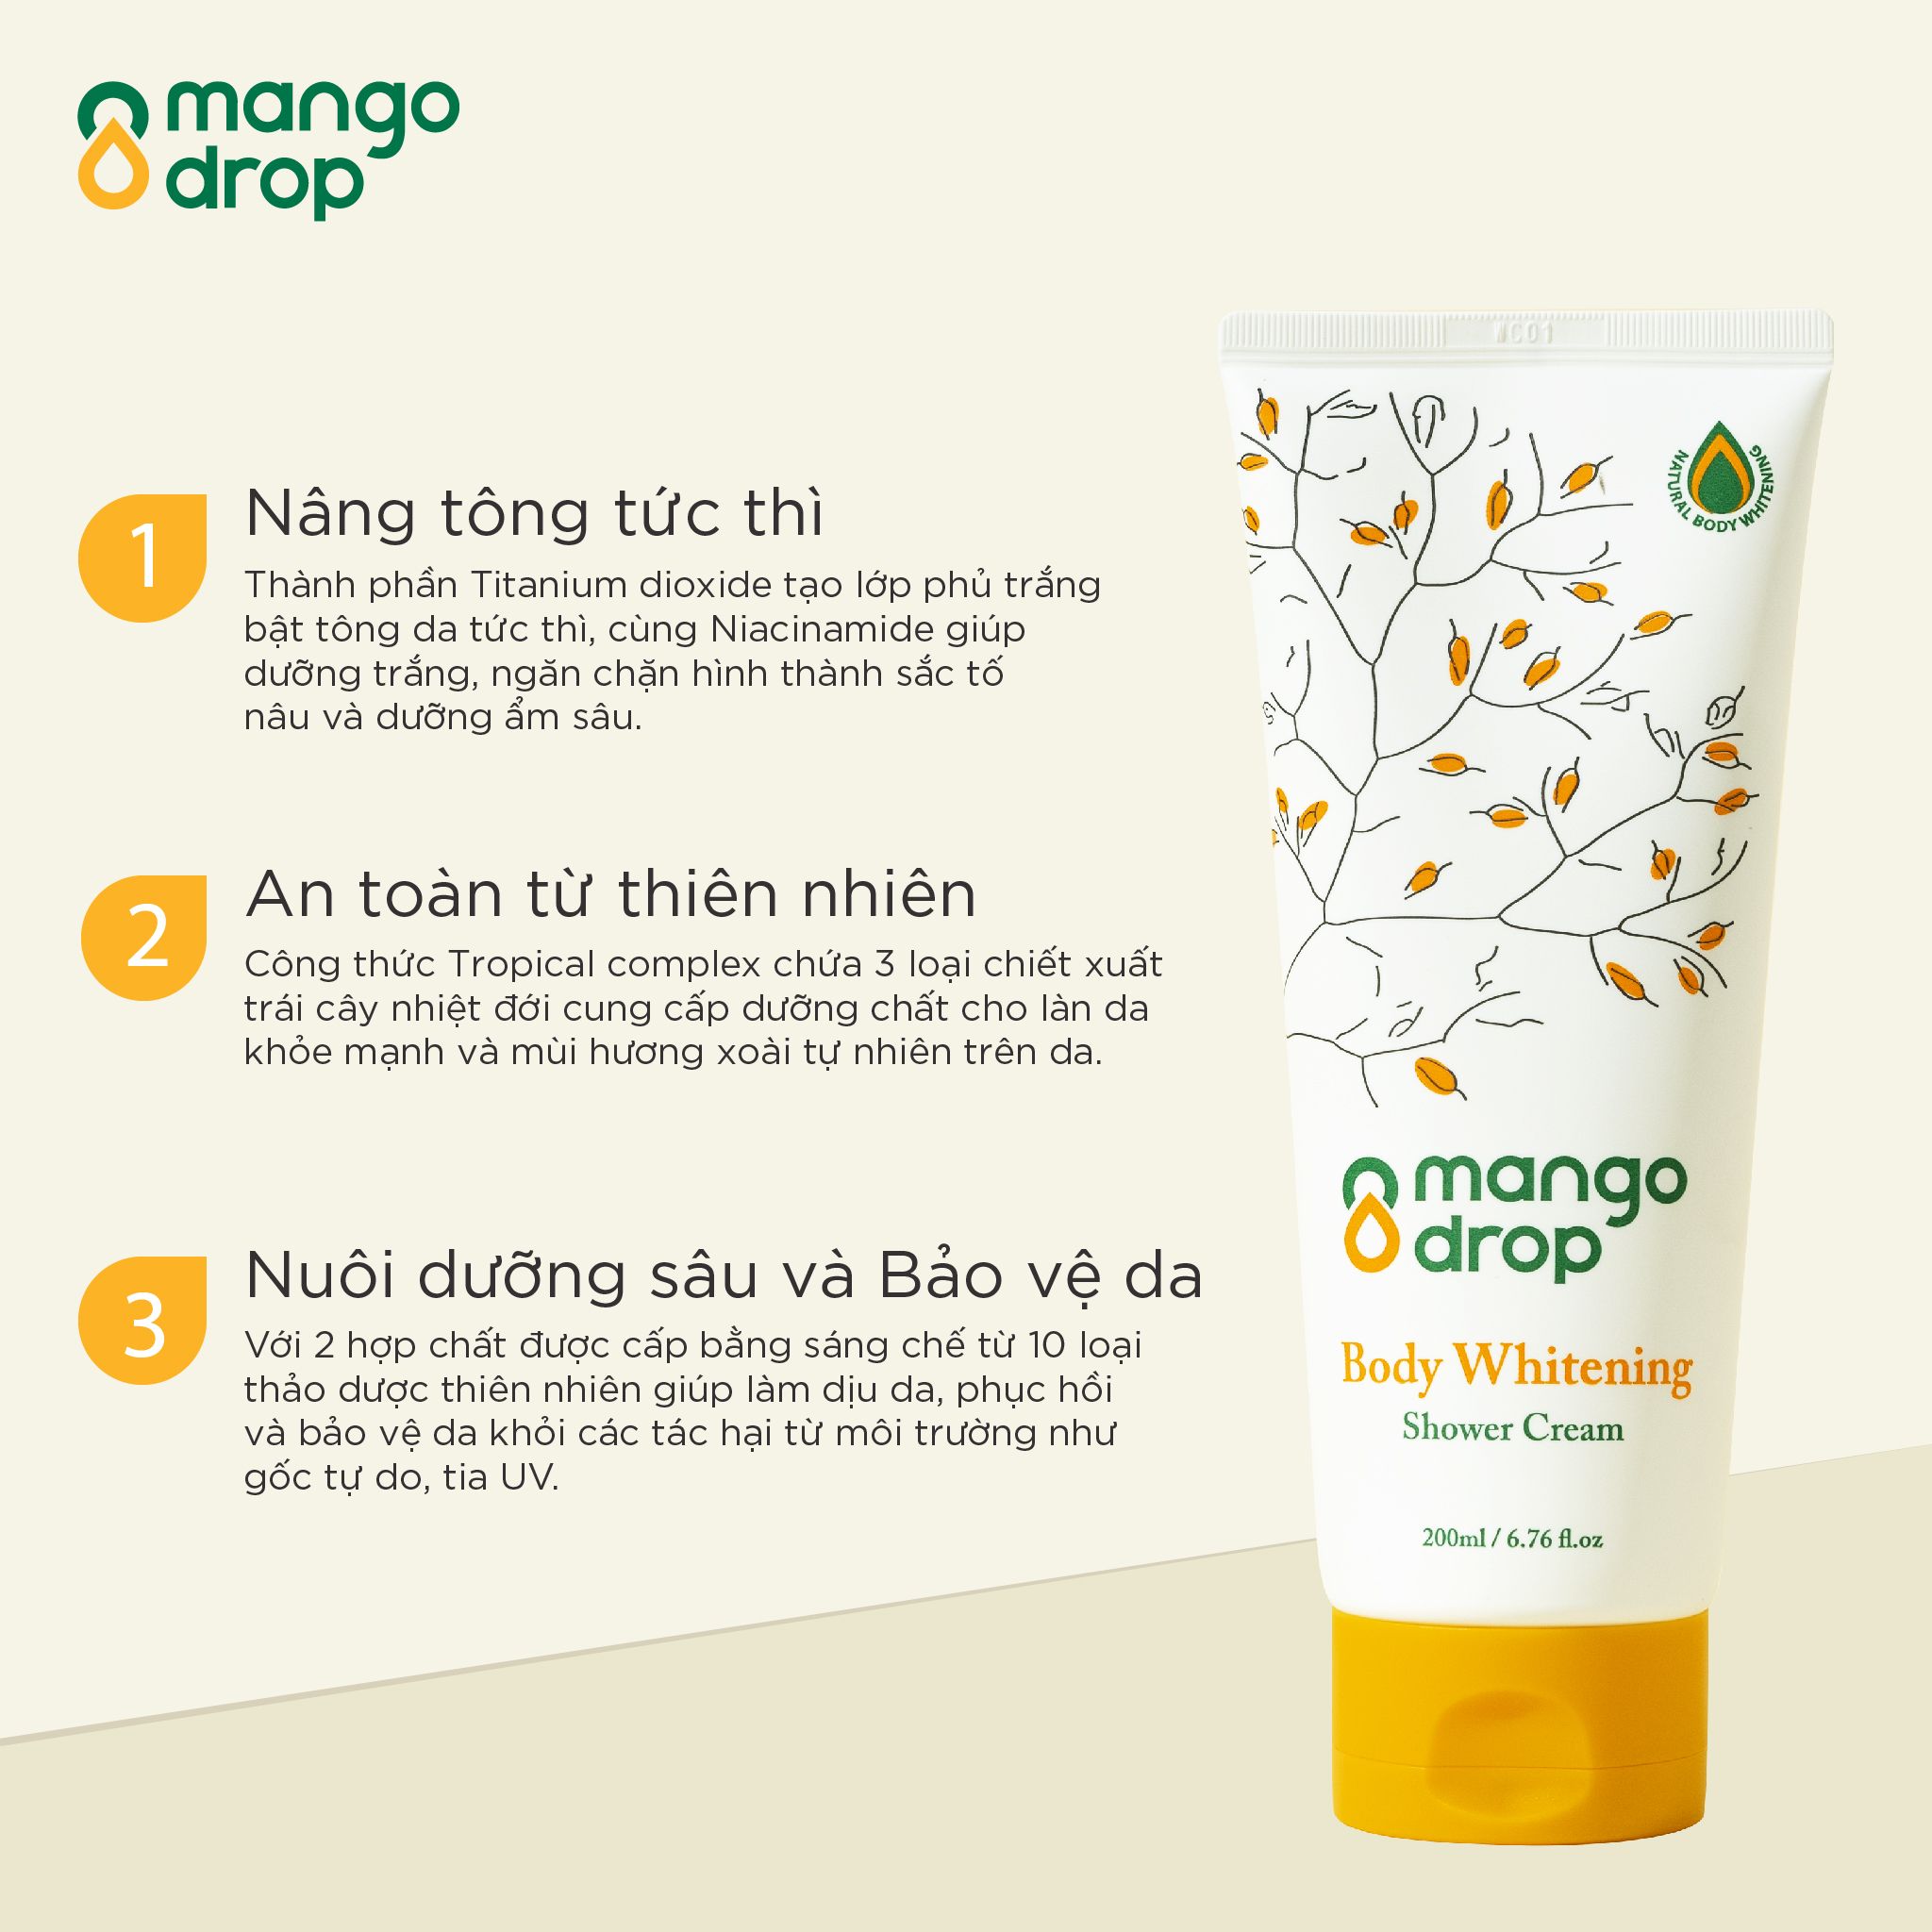  Kem Tắm Trắng Mango Drop Làm Trắng Body Mango drop Body Whitening Shower Cream 200ml 